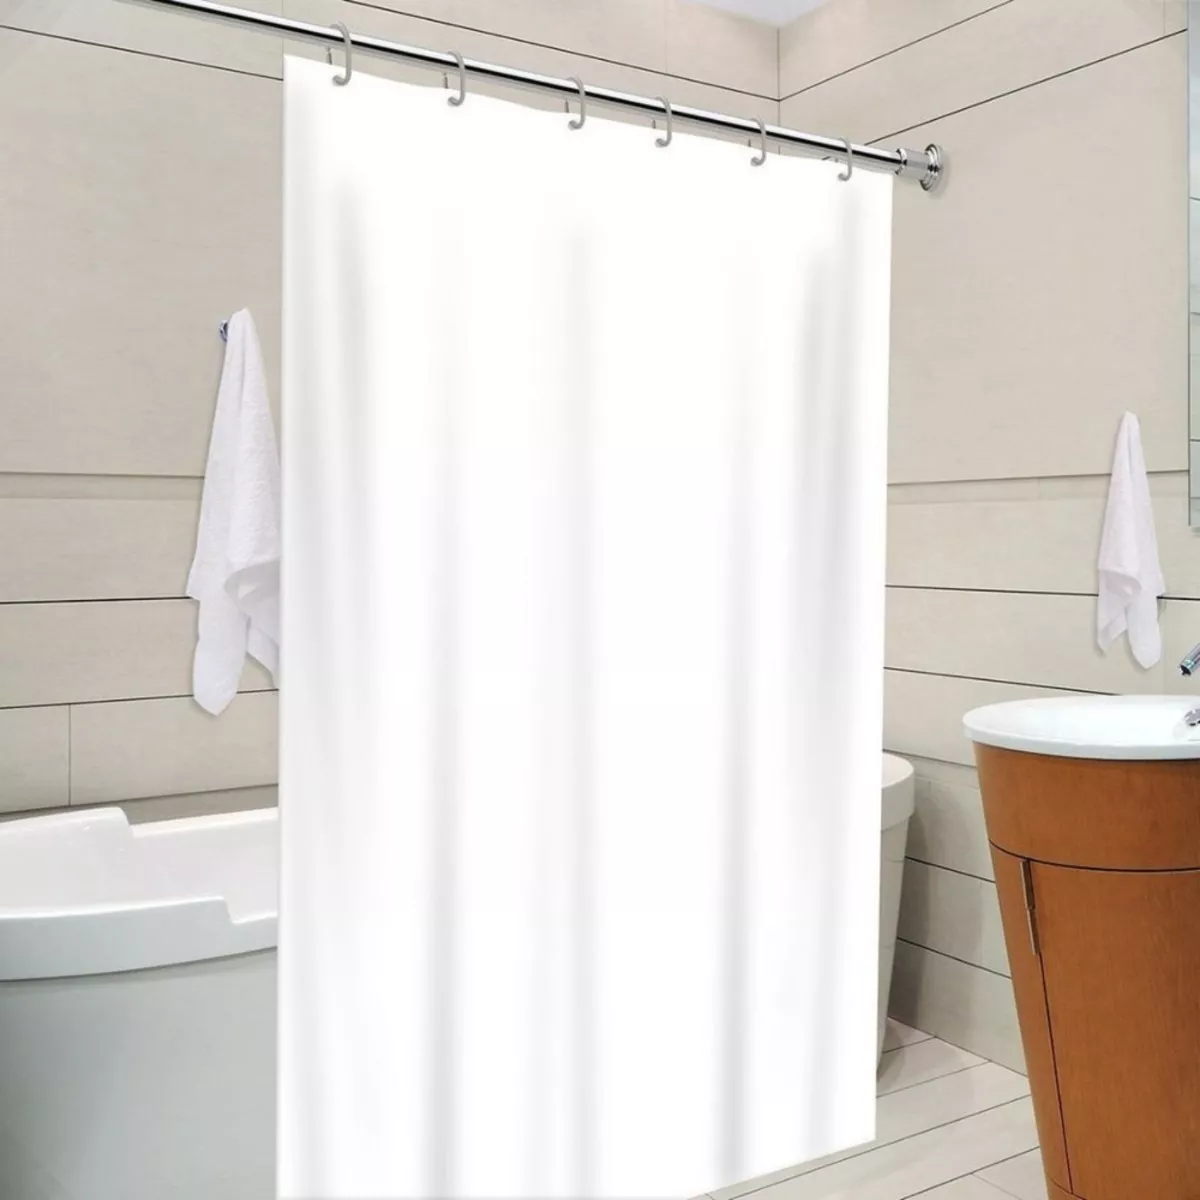 Primeira imagem para pesquisa de cortina de banheiro